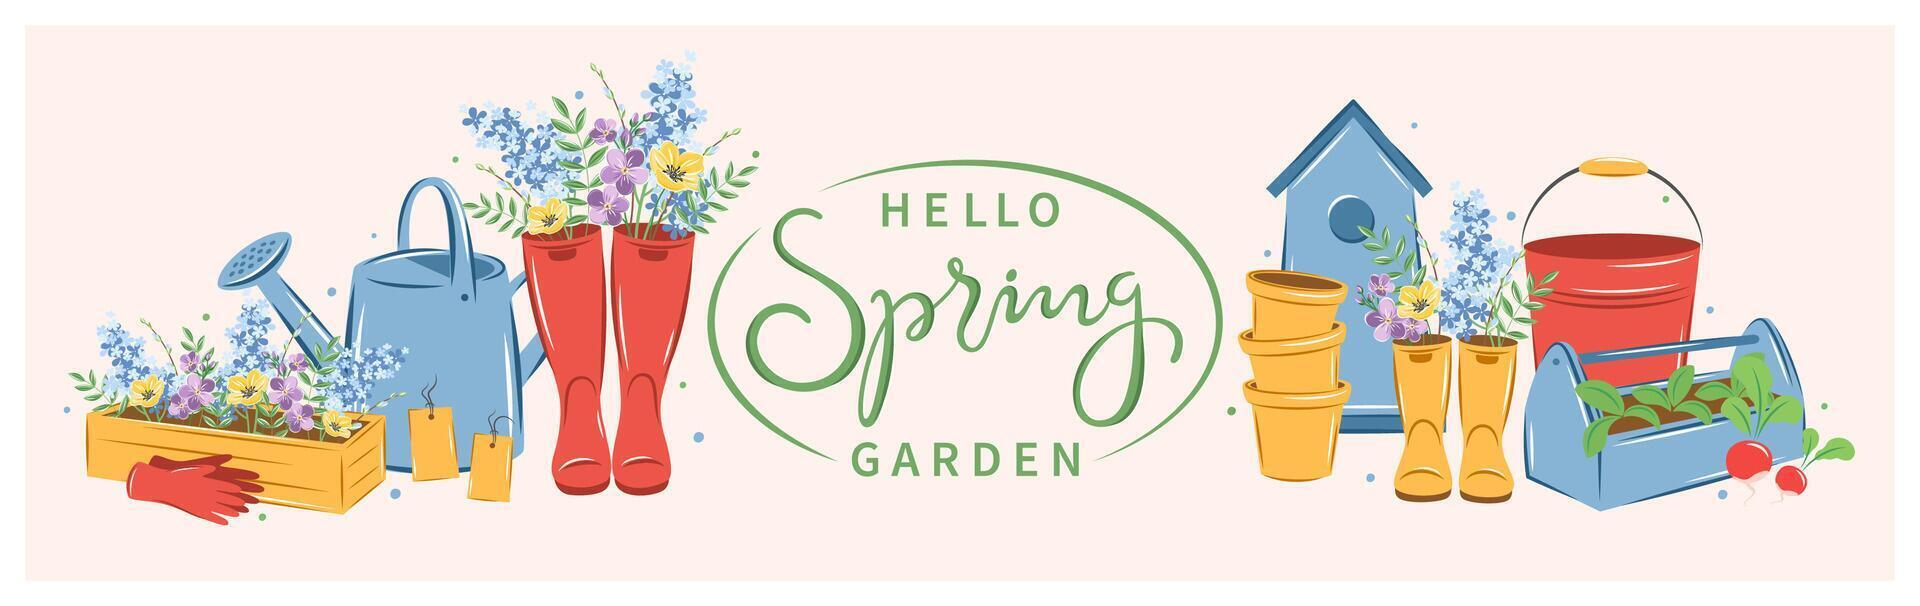 jardinagem, crescendo plantas, agrícola ferramentas. Olá Primavera jardim texto. vetor ilustração.